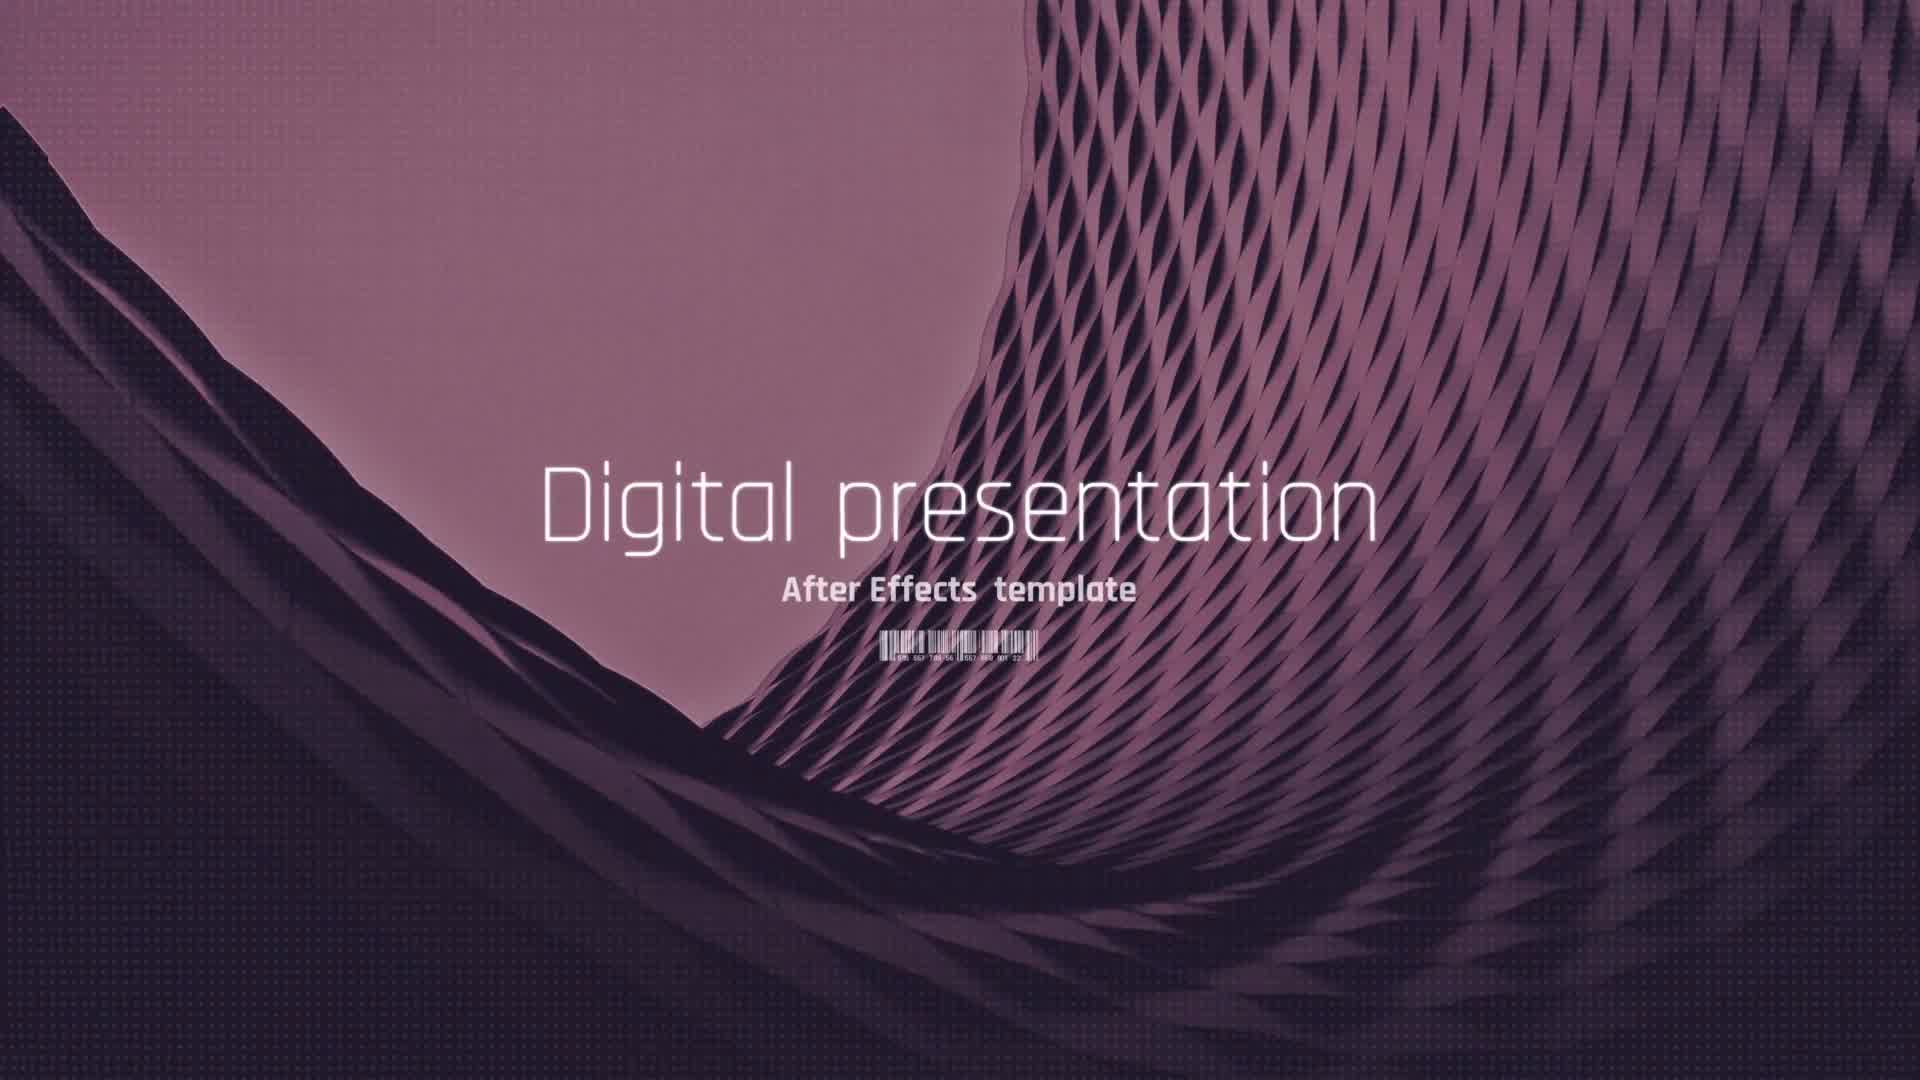 Digital Presentation Digital Slideshow Videohive 23196976 After Effects Image 11